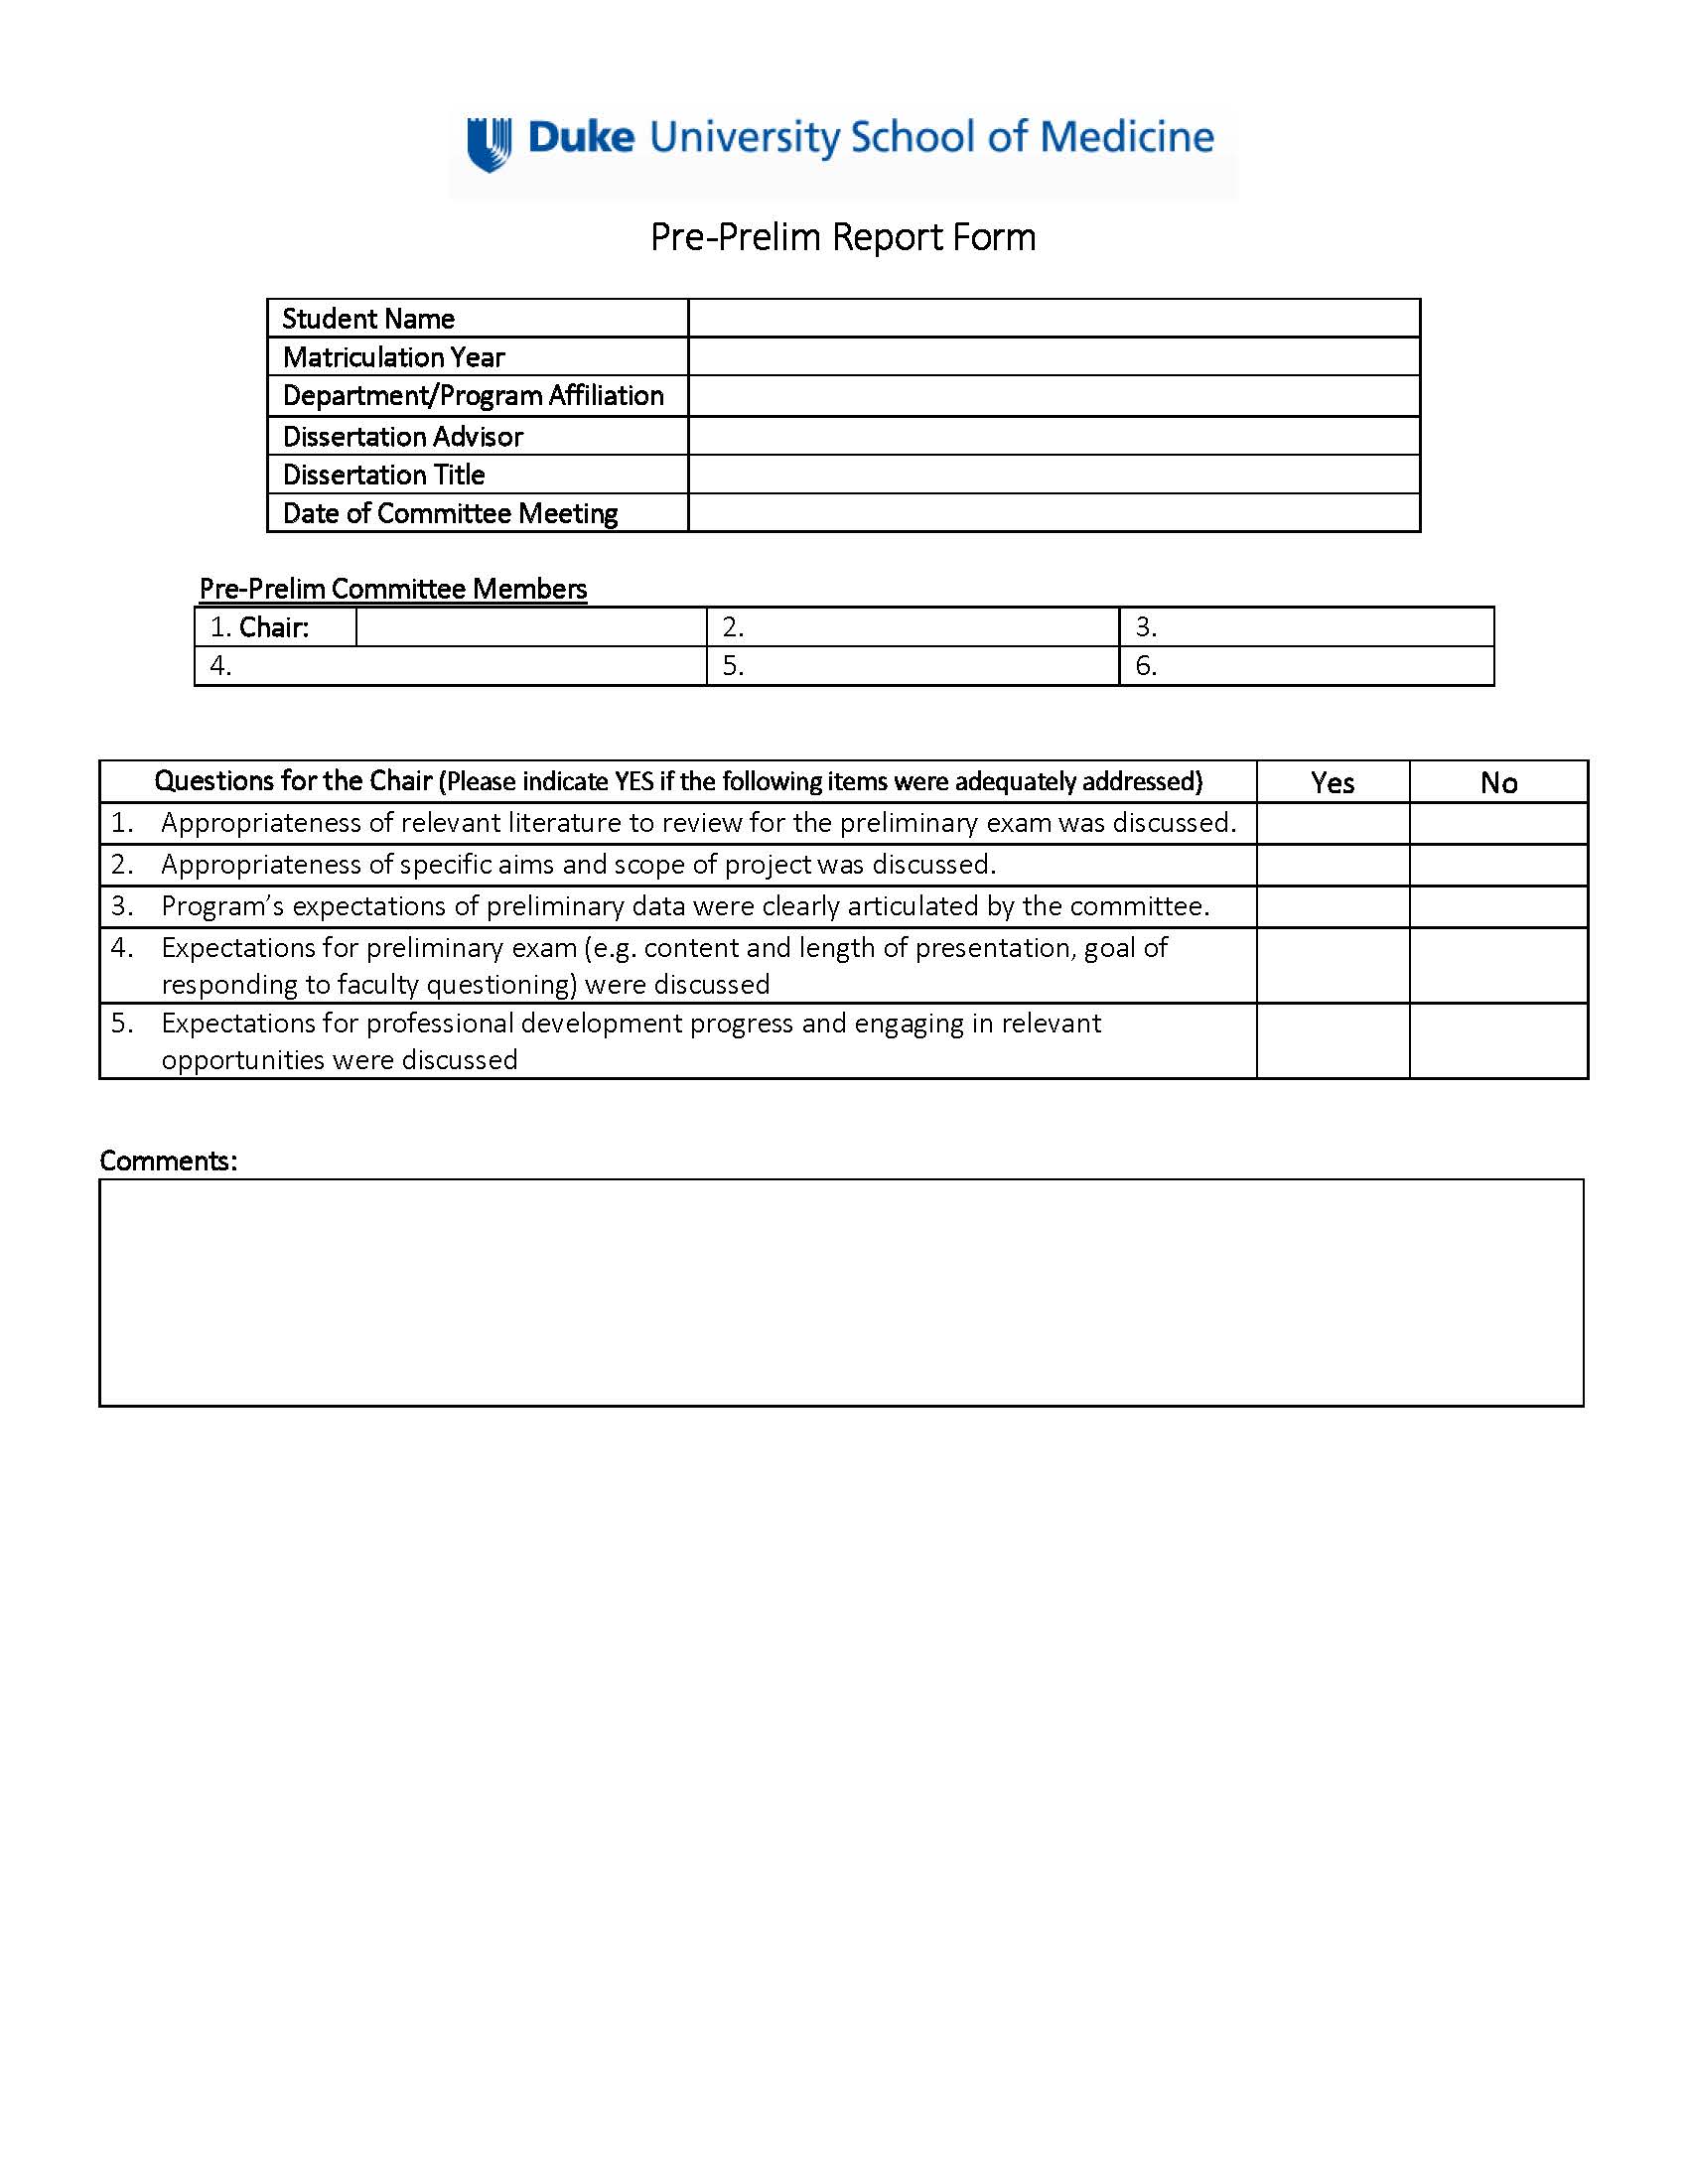 Pre-prelim Evaluation Form